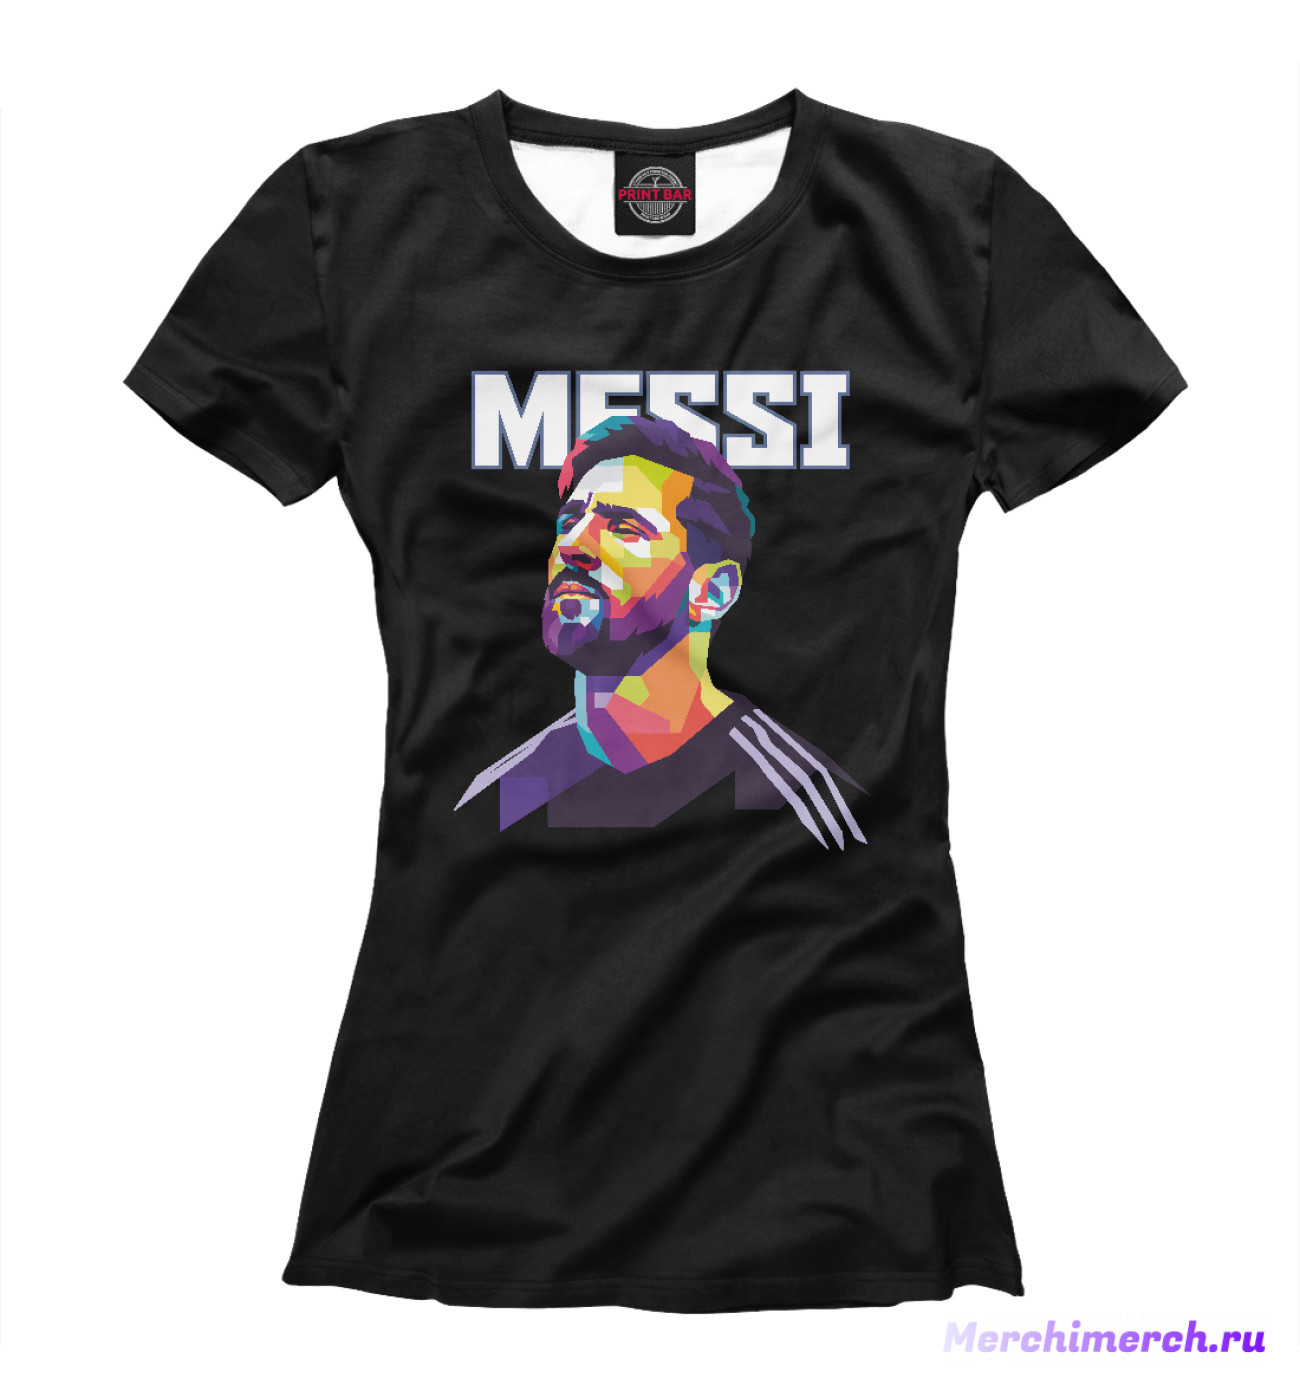 Женская Футболка Messi, артикул: BAR-846095-fut-1